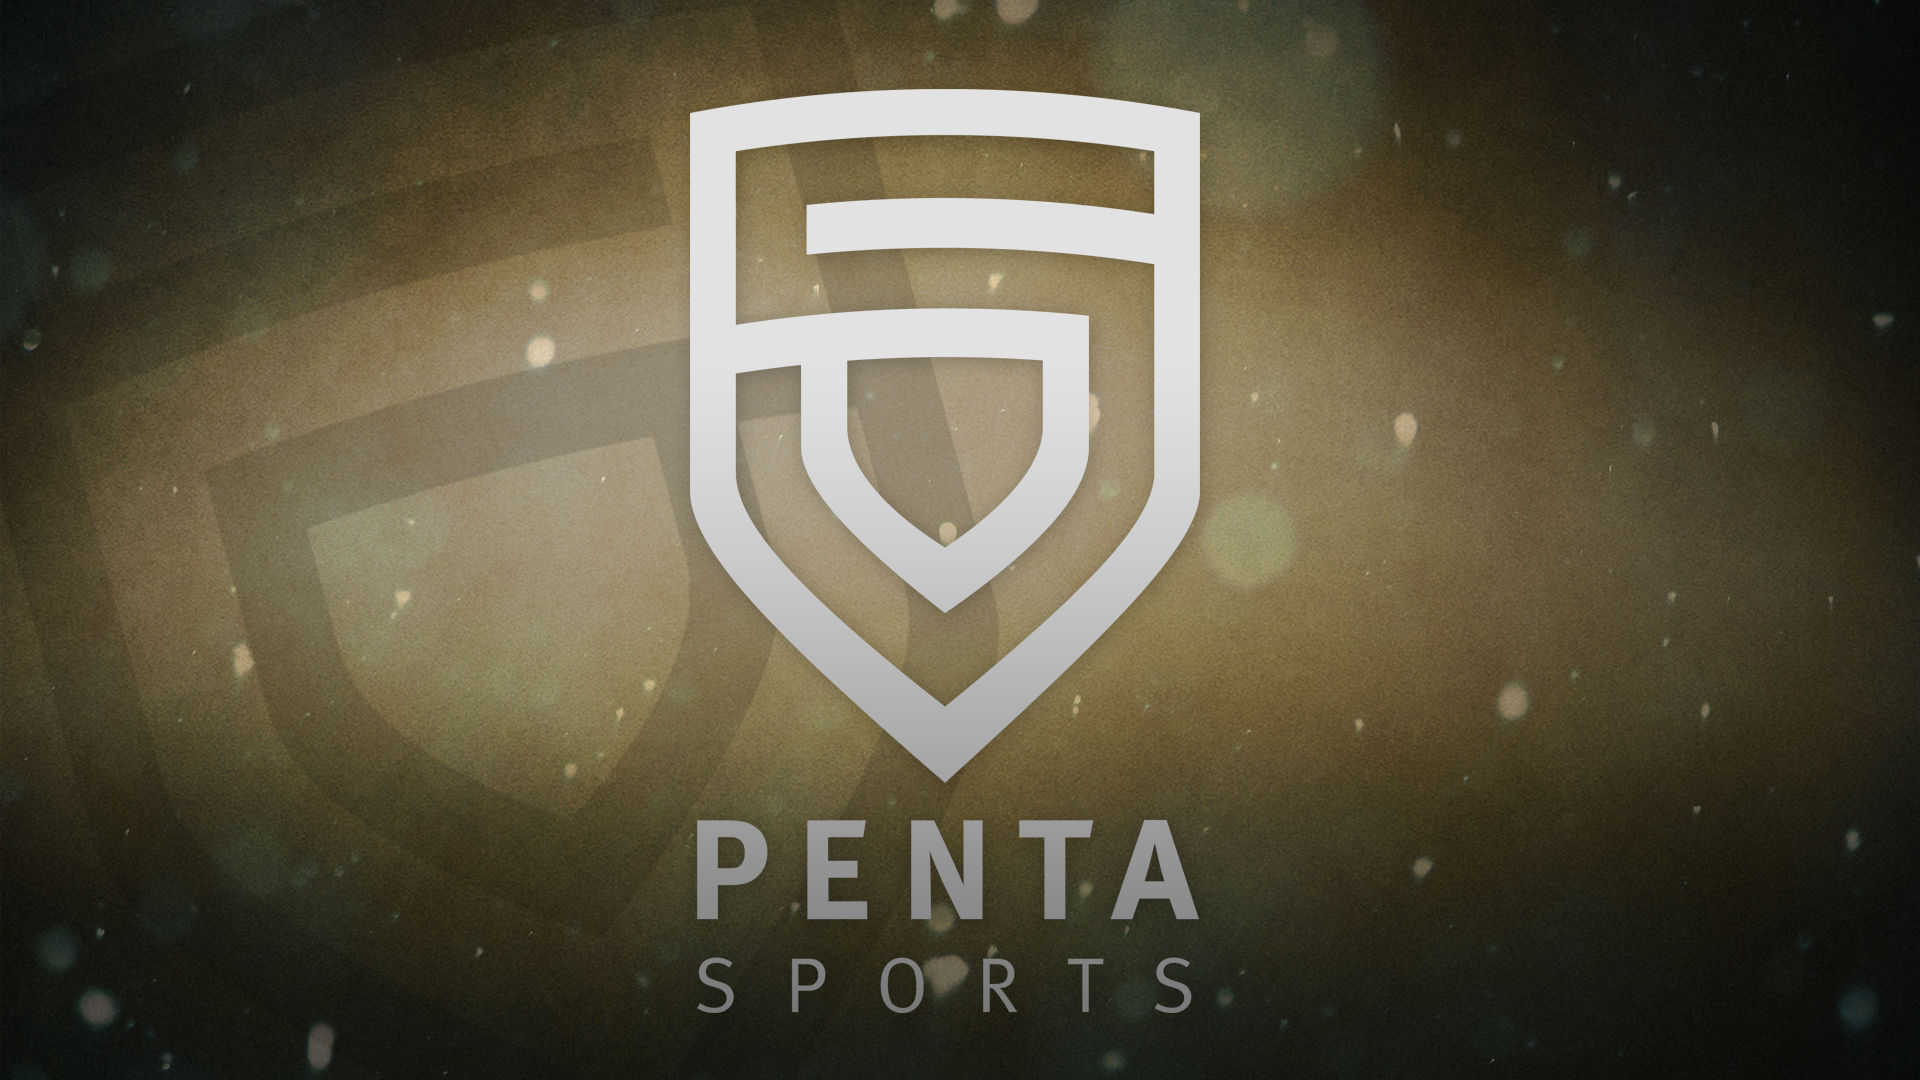 Penta Sports Катовице 2015. Пента. Игра Пента. Лого Пента Спортс.